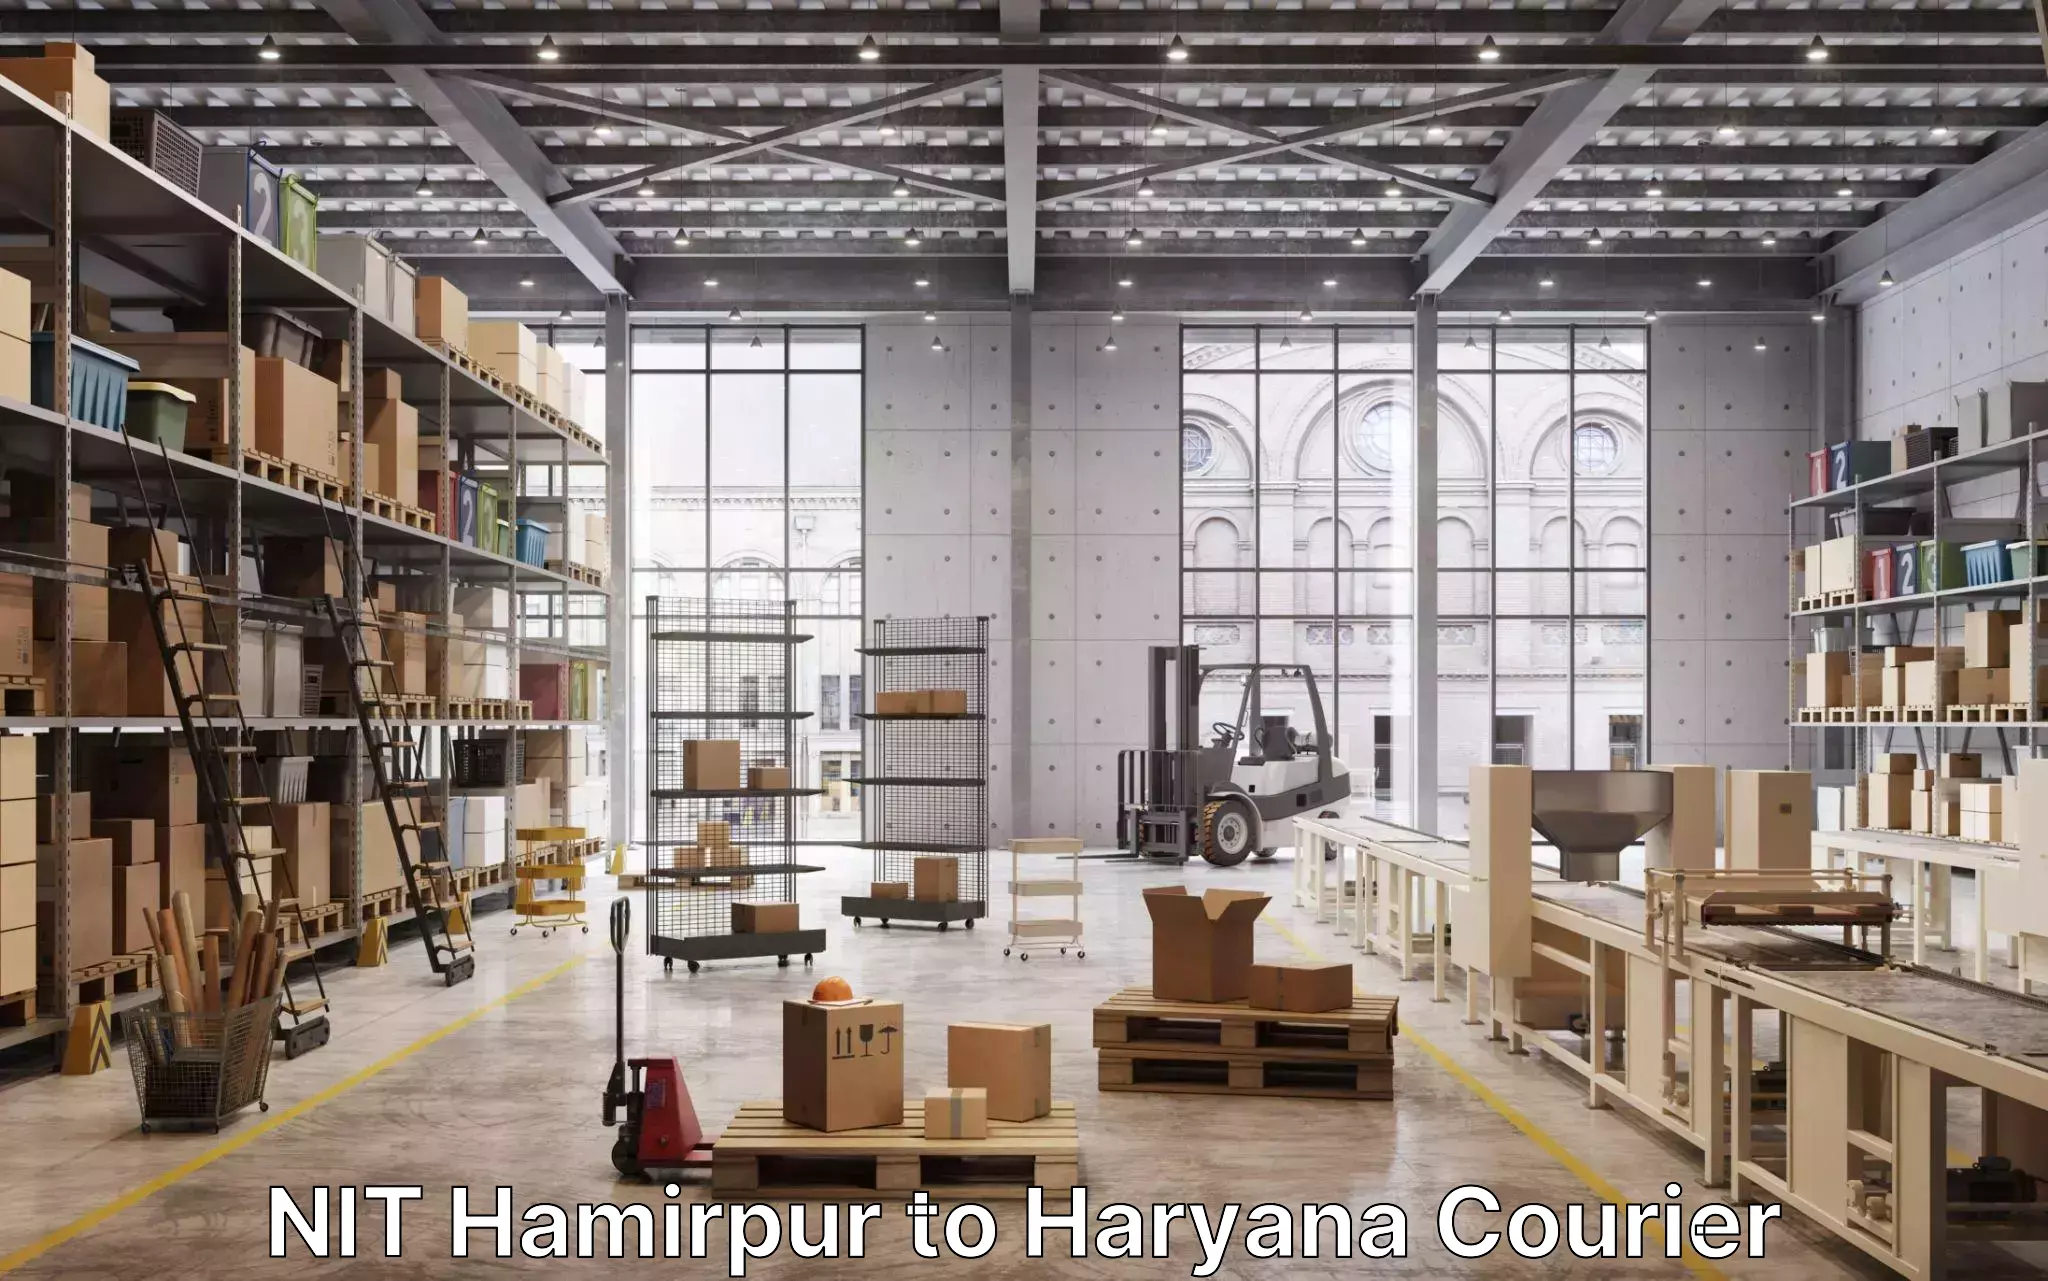 Furniture delivery service NIT Hamirpur to Yamuna Nagar